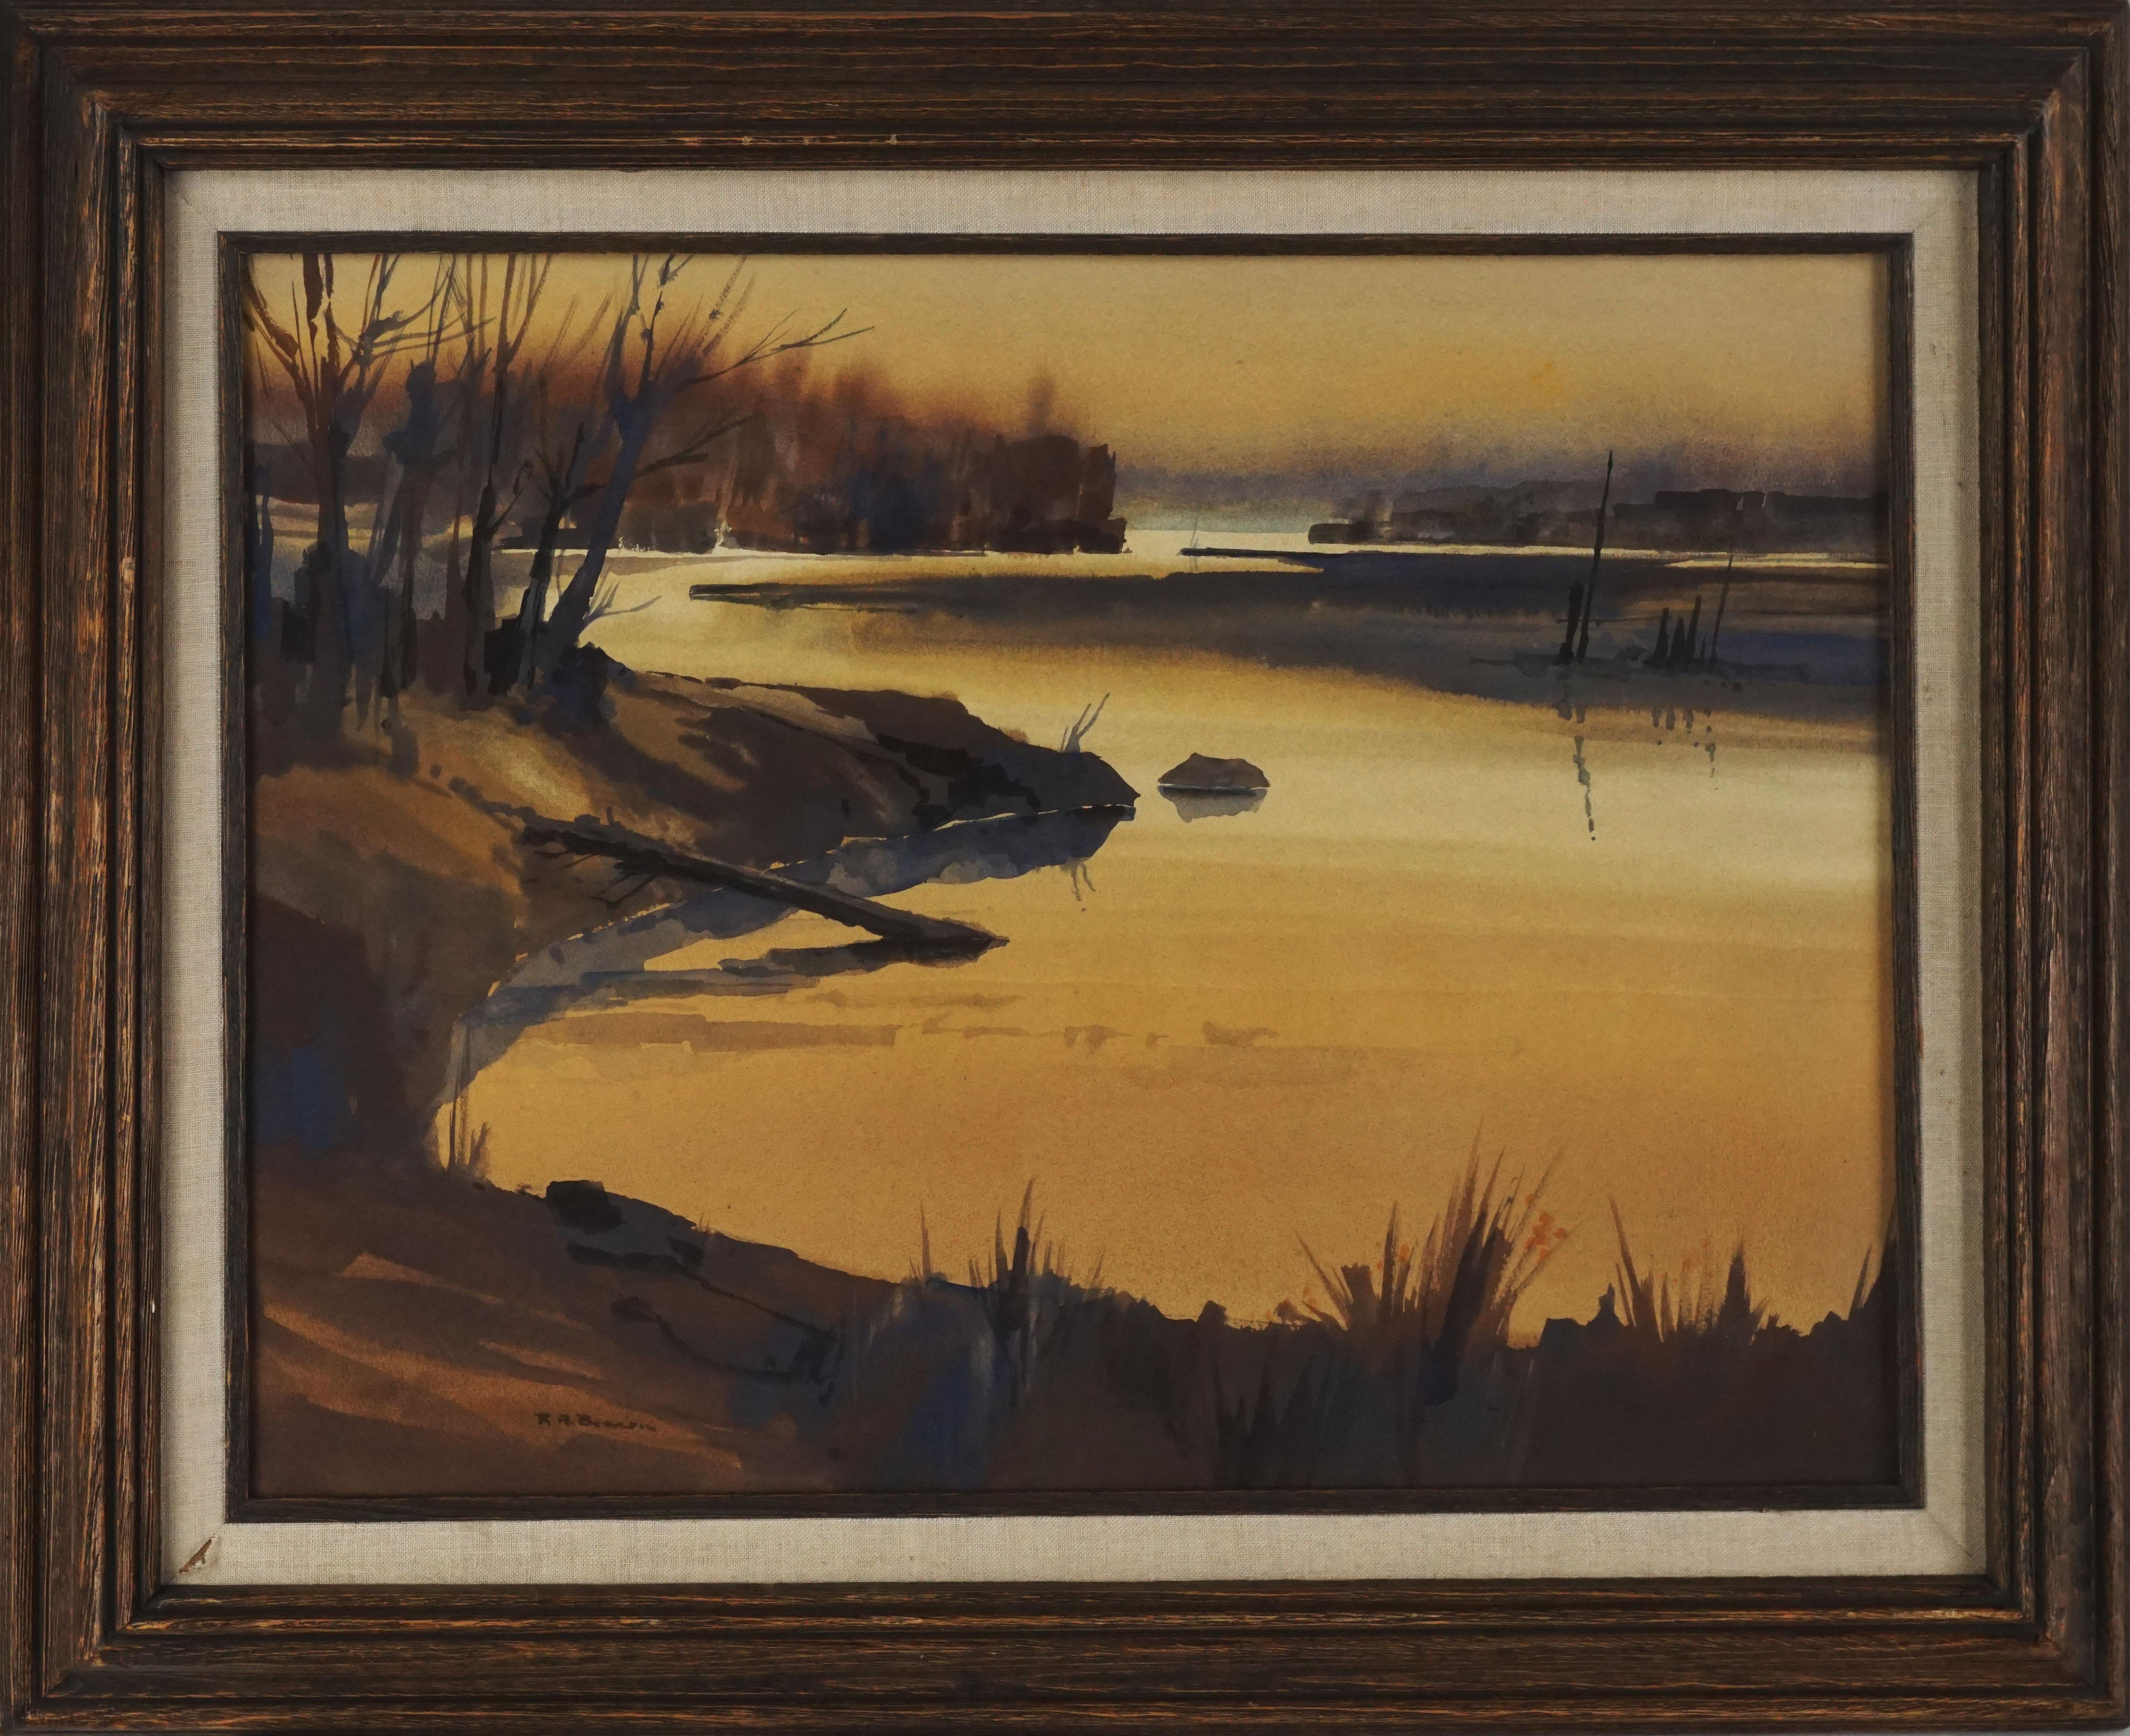 Ritchie A. Benson Landscape Painting - "Misty Lagoon", Monochrome 1970's Lanscape Watercolor 